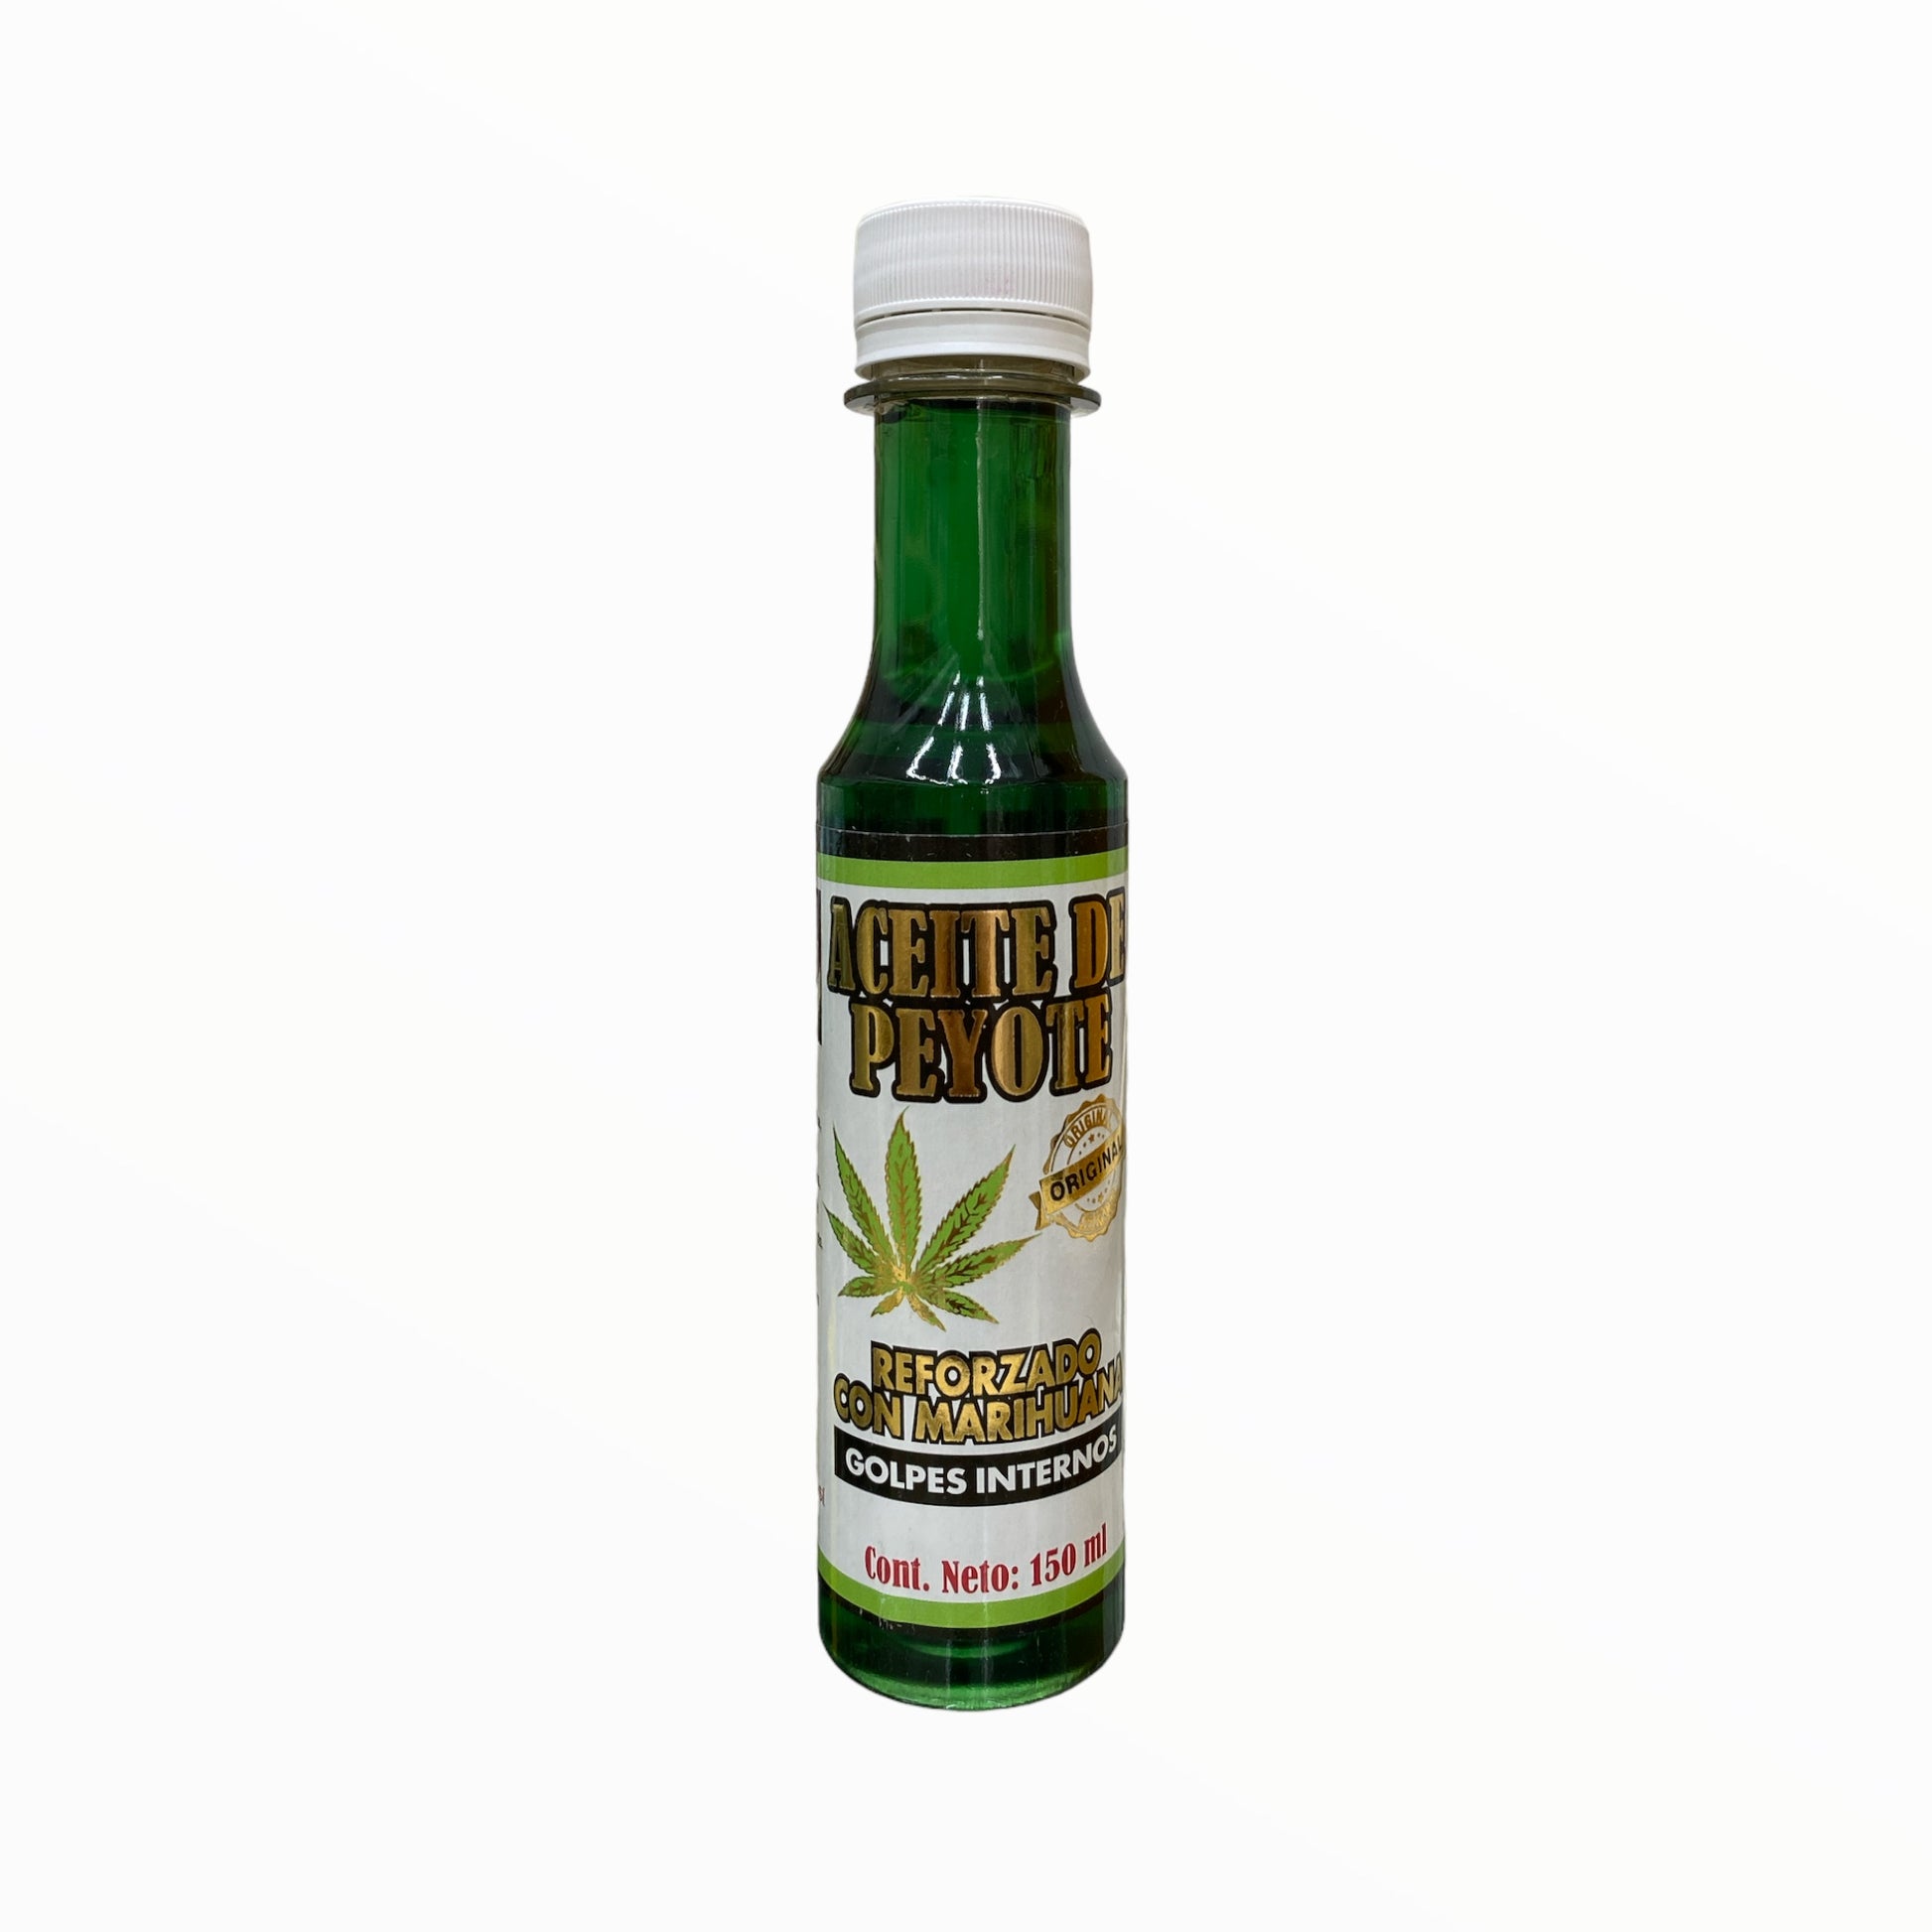 Aceide de Peyote con Marihuana 150 ml Real de 14